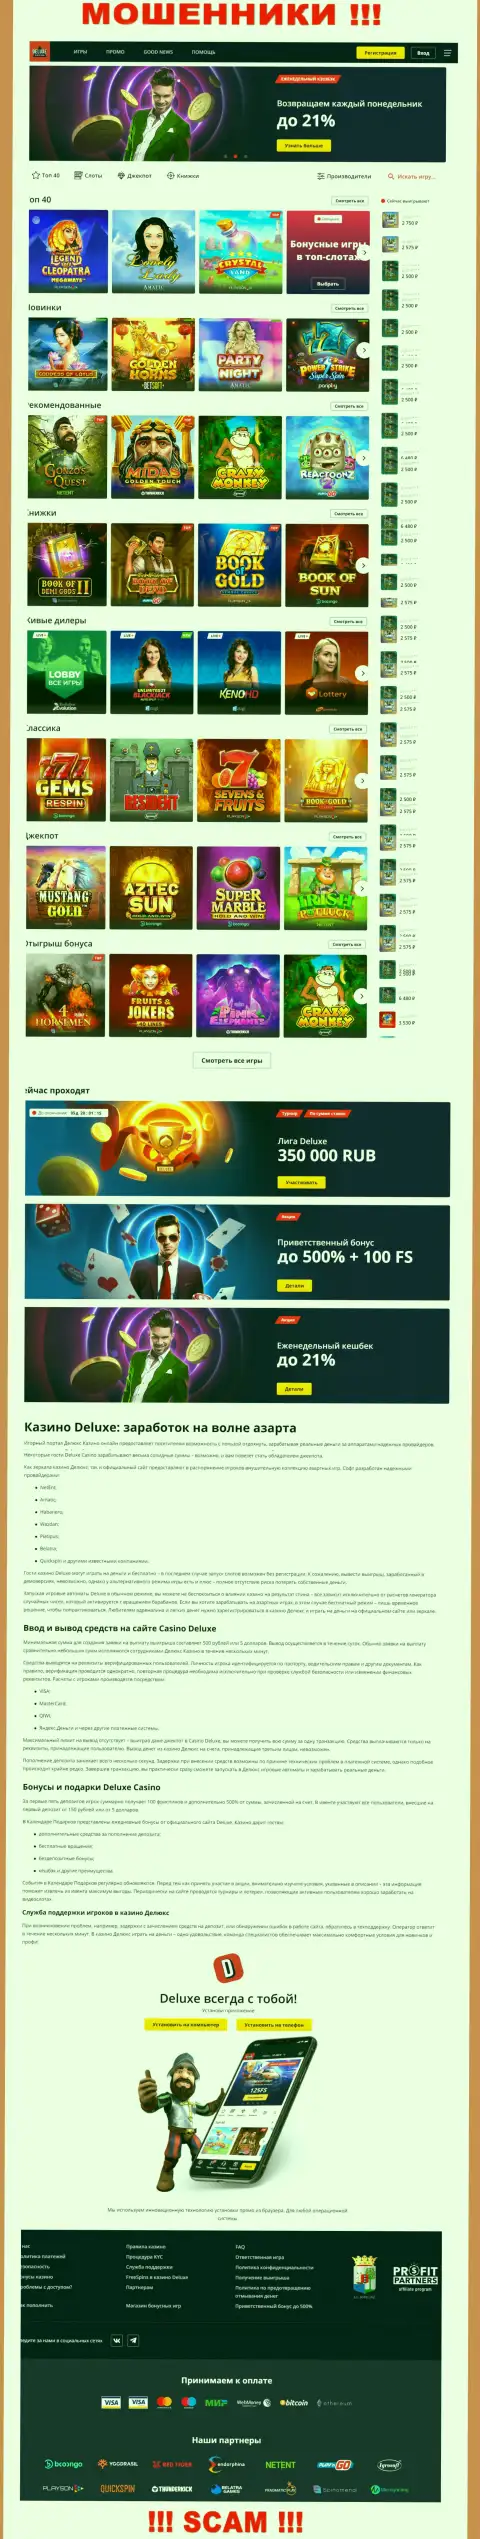 Официальная internet страница конторы Deluxe Casino